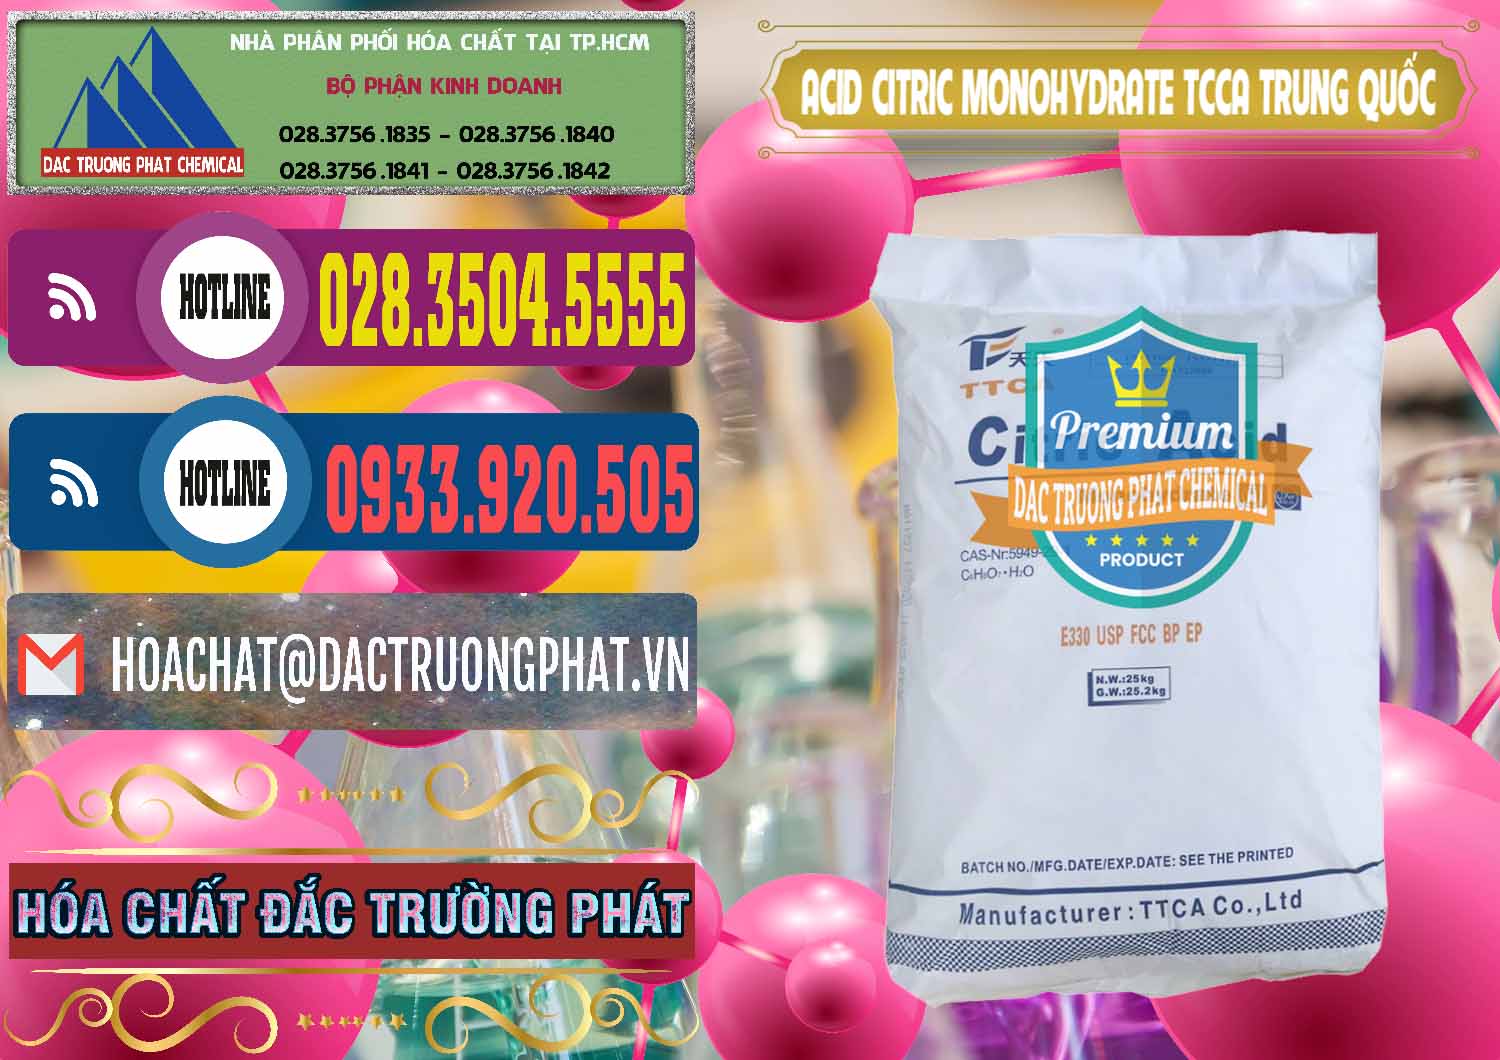 Cty chuyên cung cấp & bán Acid Citric - Axit Citric Monohydrate TCCA Trung Quốc China - 0441 - Công ty bán ( cung cấp ) hóa chất tại TP.HCM - muabanhoachat.com.vn